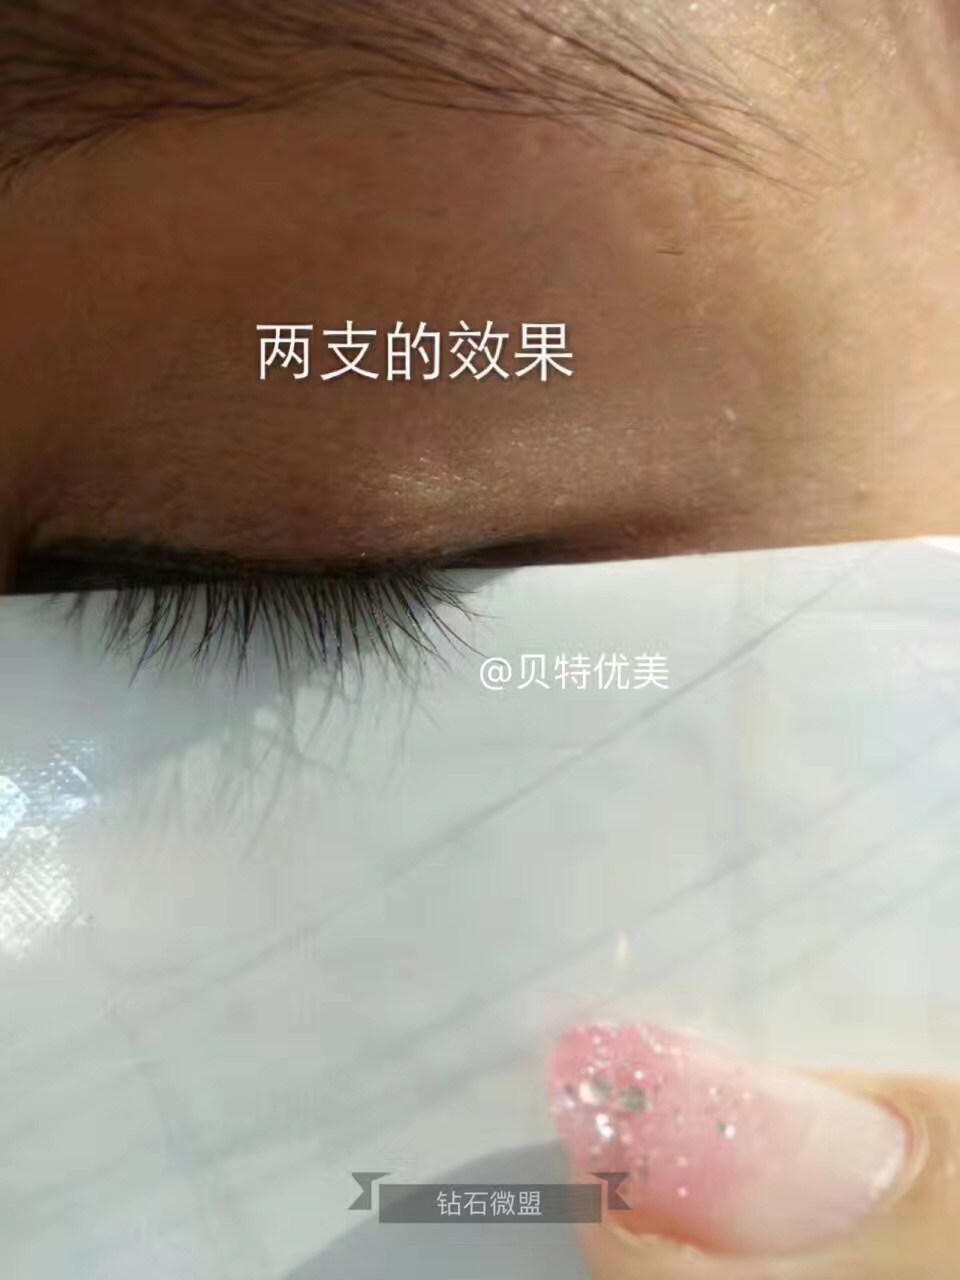 贝特优美睫毛增长液含没含有激素?对眼睛有伤害吗?(www.zzx8.com)